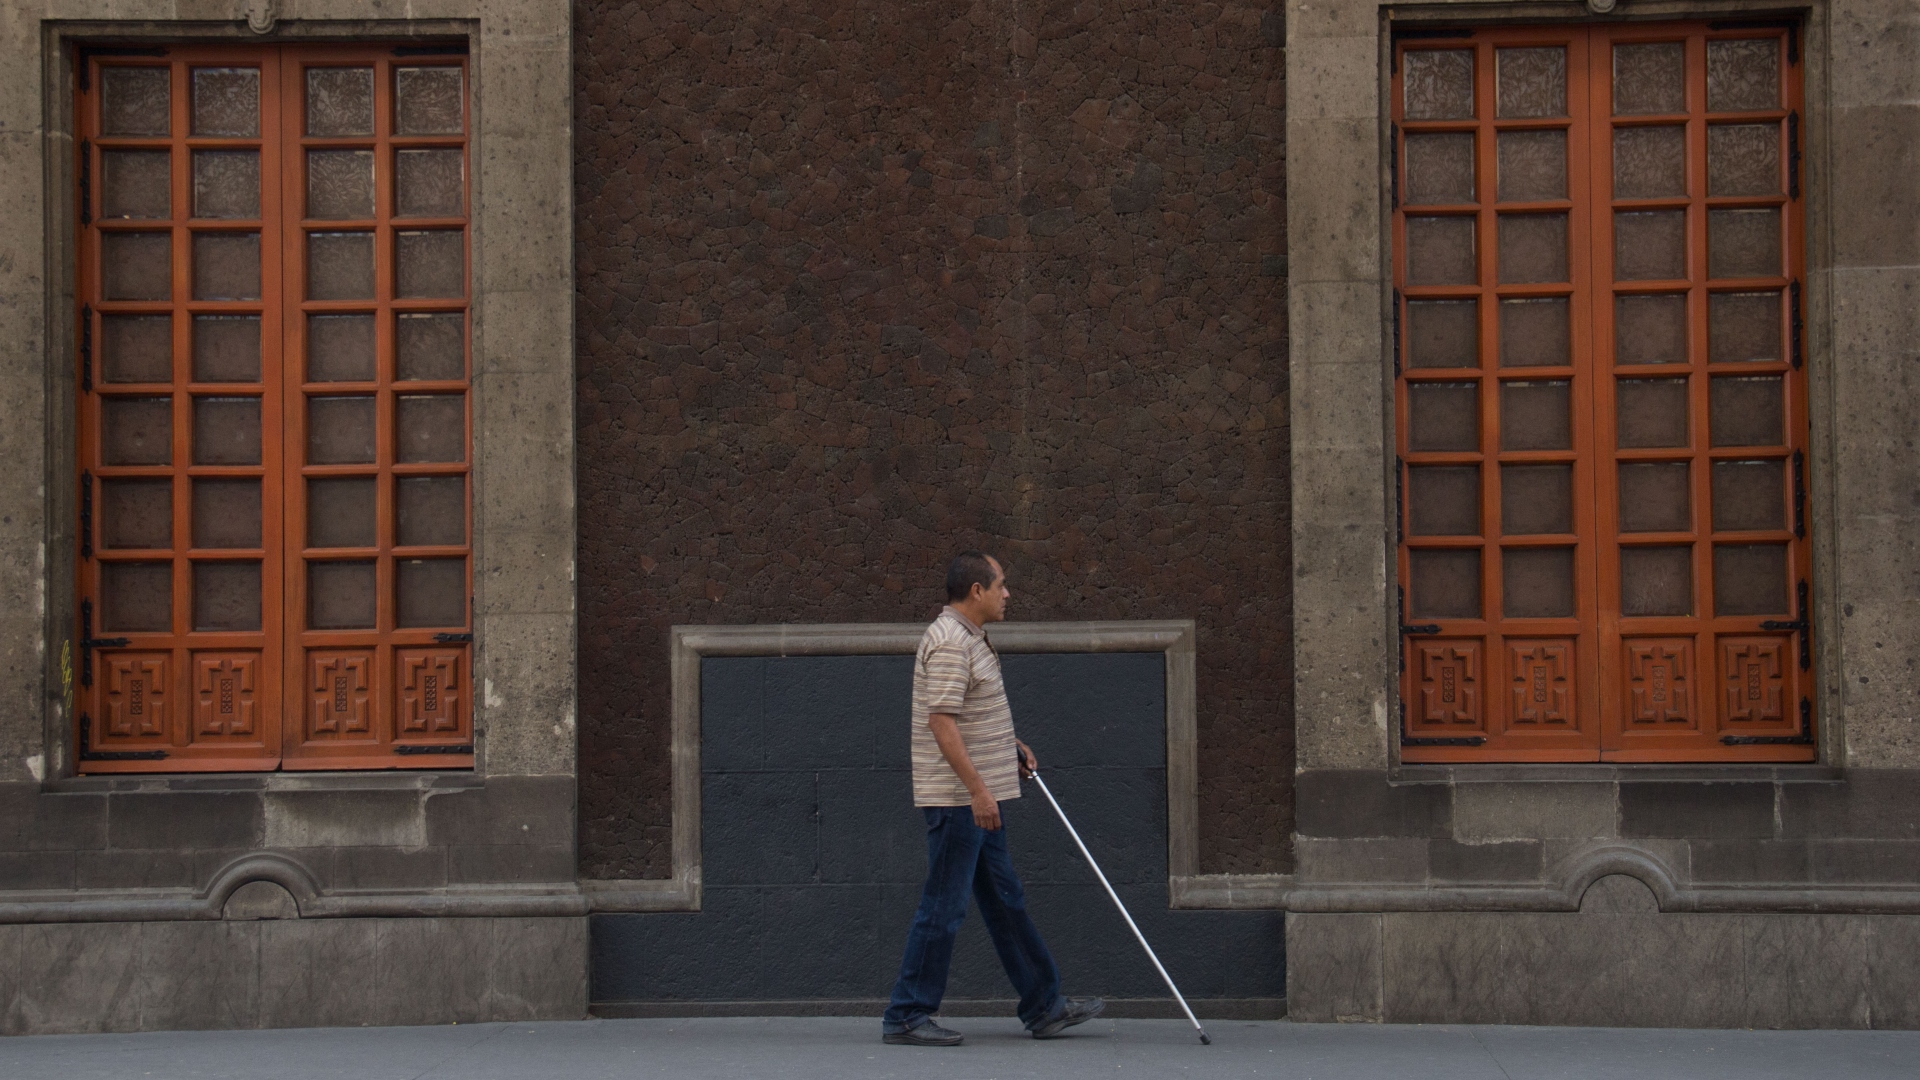 En México, más de 7 millones de personas tienen alguna discapacidad; Senadores buscan reforma laboral